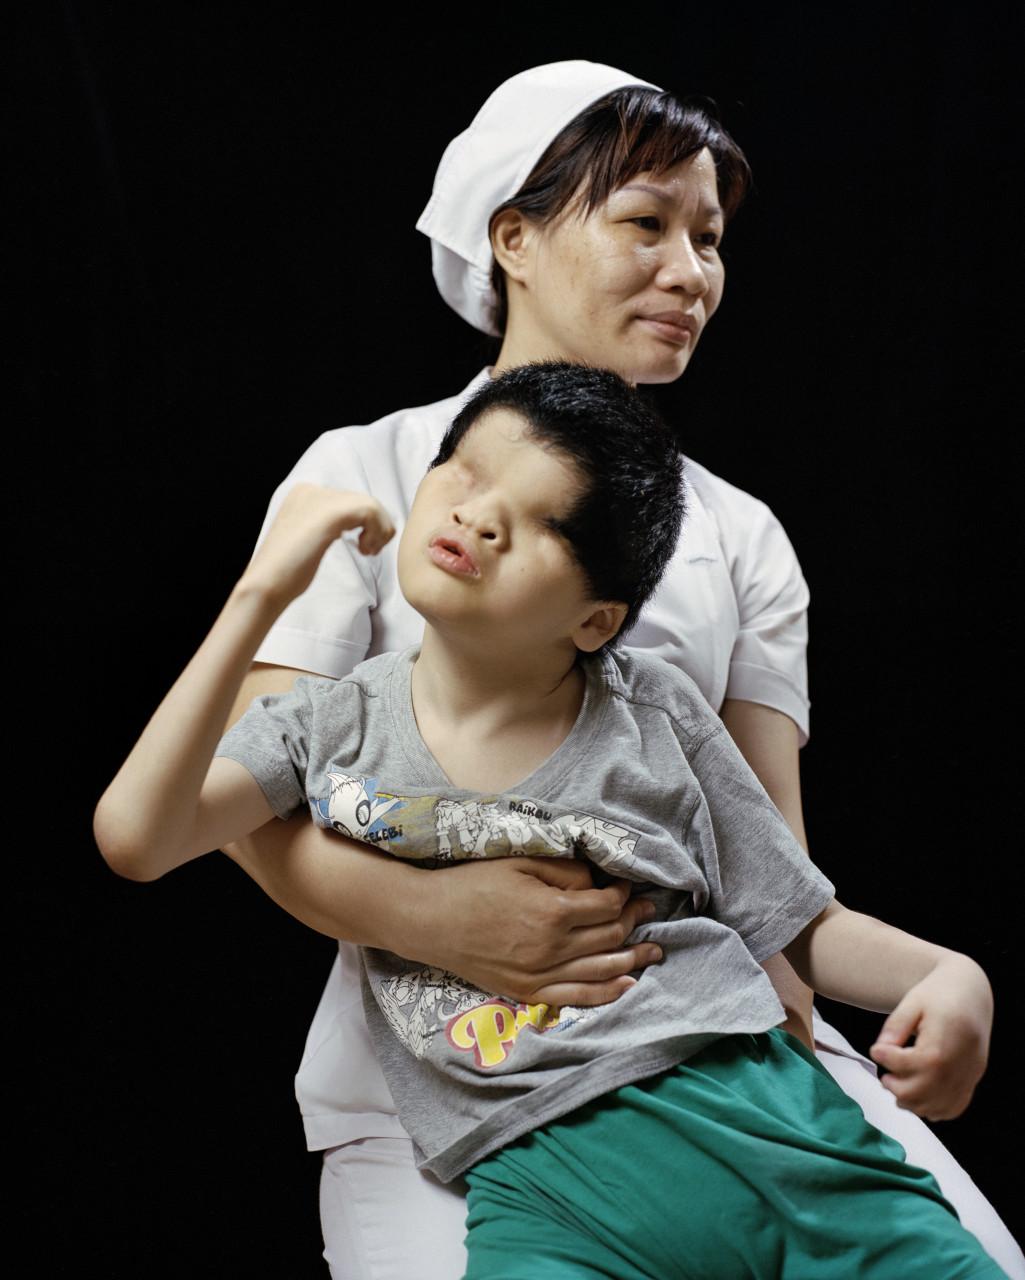 HÔPITAL OBSTÉTRIQUE TÛ DÛ. HÔ CHÍ MINH-VILLE, VIÊTNAM., de la série "Monsanto, une enquête photographique"